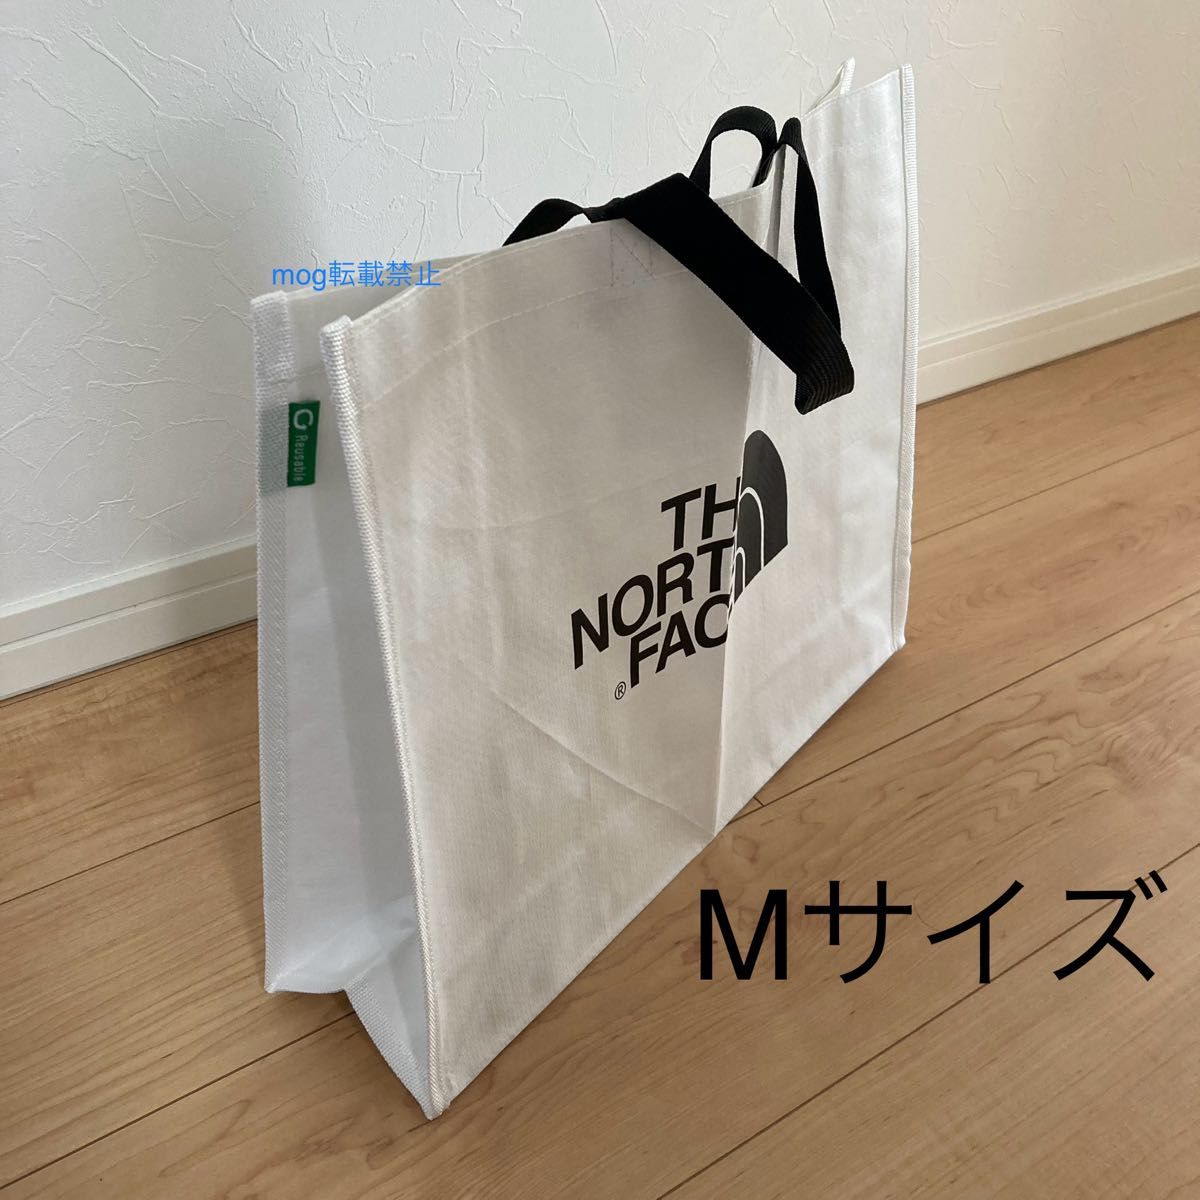 THE NORTH  FACE 新品2個セット【M・Lサイズ】ノースフェイス エコバッグ ショッピングバッグ